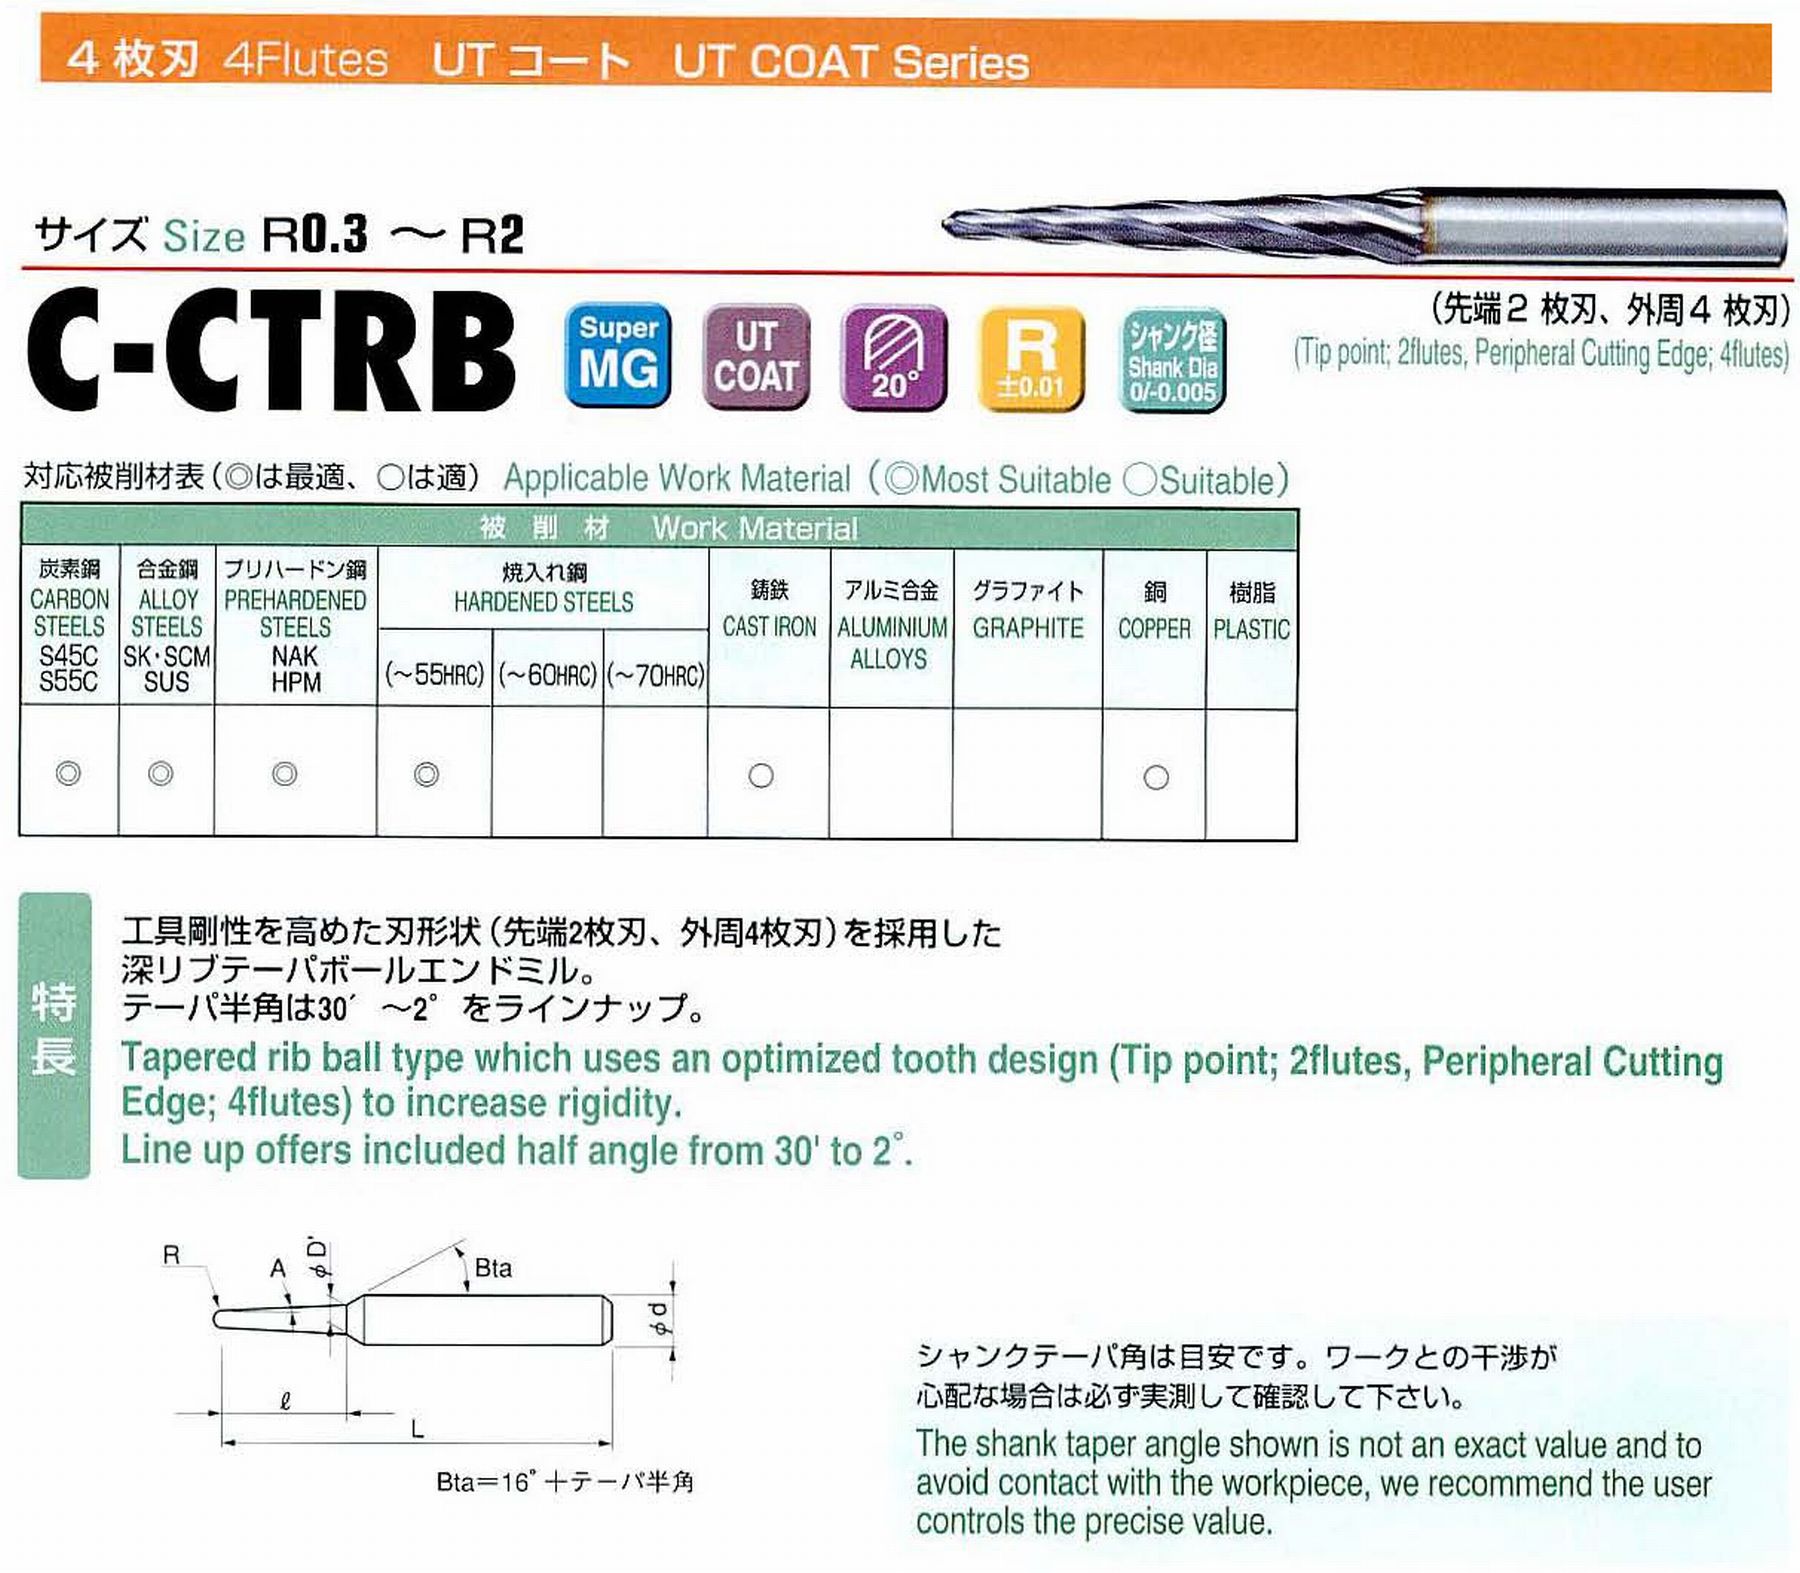 ユニオンツール 4枚刃 C-CTRB4008-10-1 ボール半径R0.4 テーパ半角30′ 刃長10 大端径0.97 全長45 シャンク径4